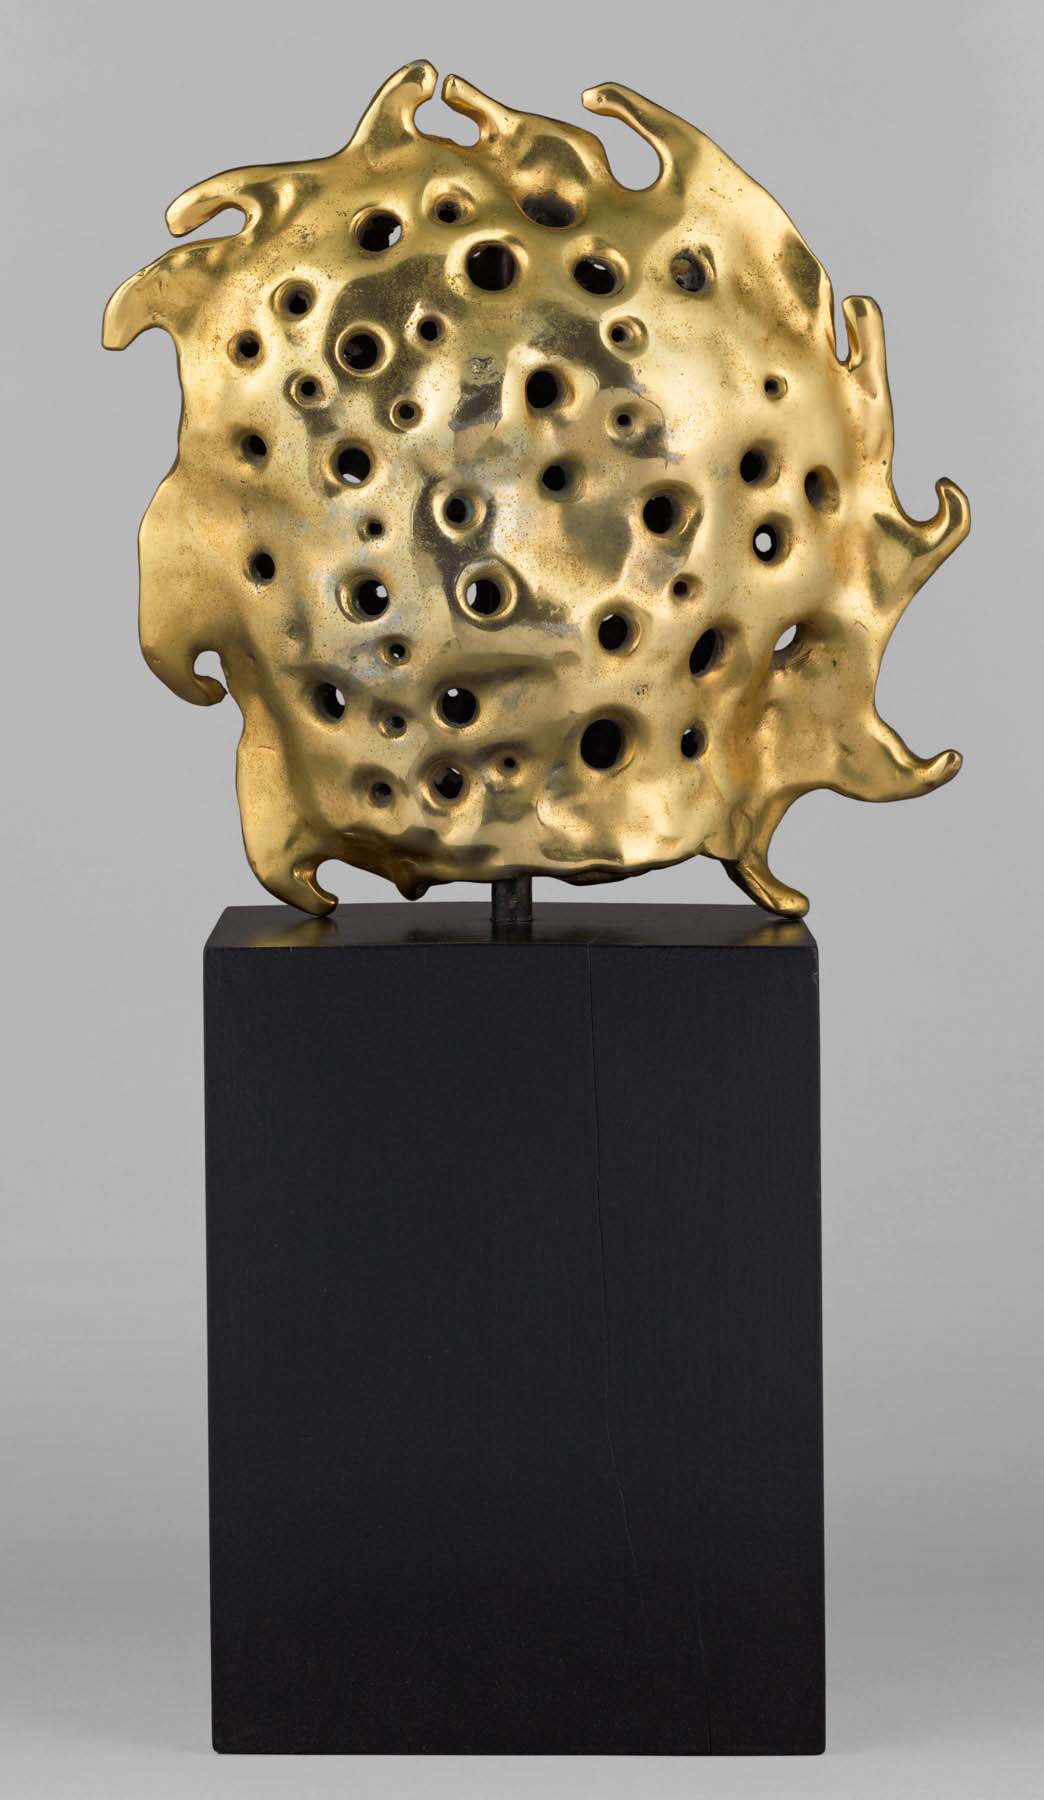 A bronze sculpture of a gold sun sitting atop a tall, dark rectagular base.